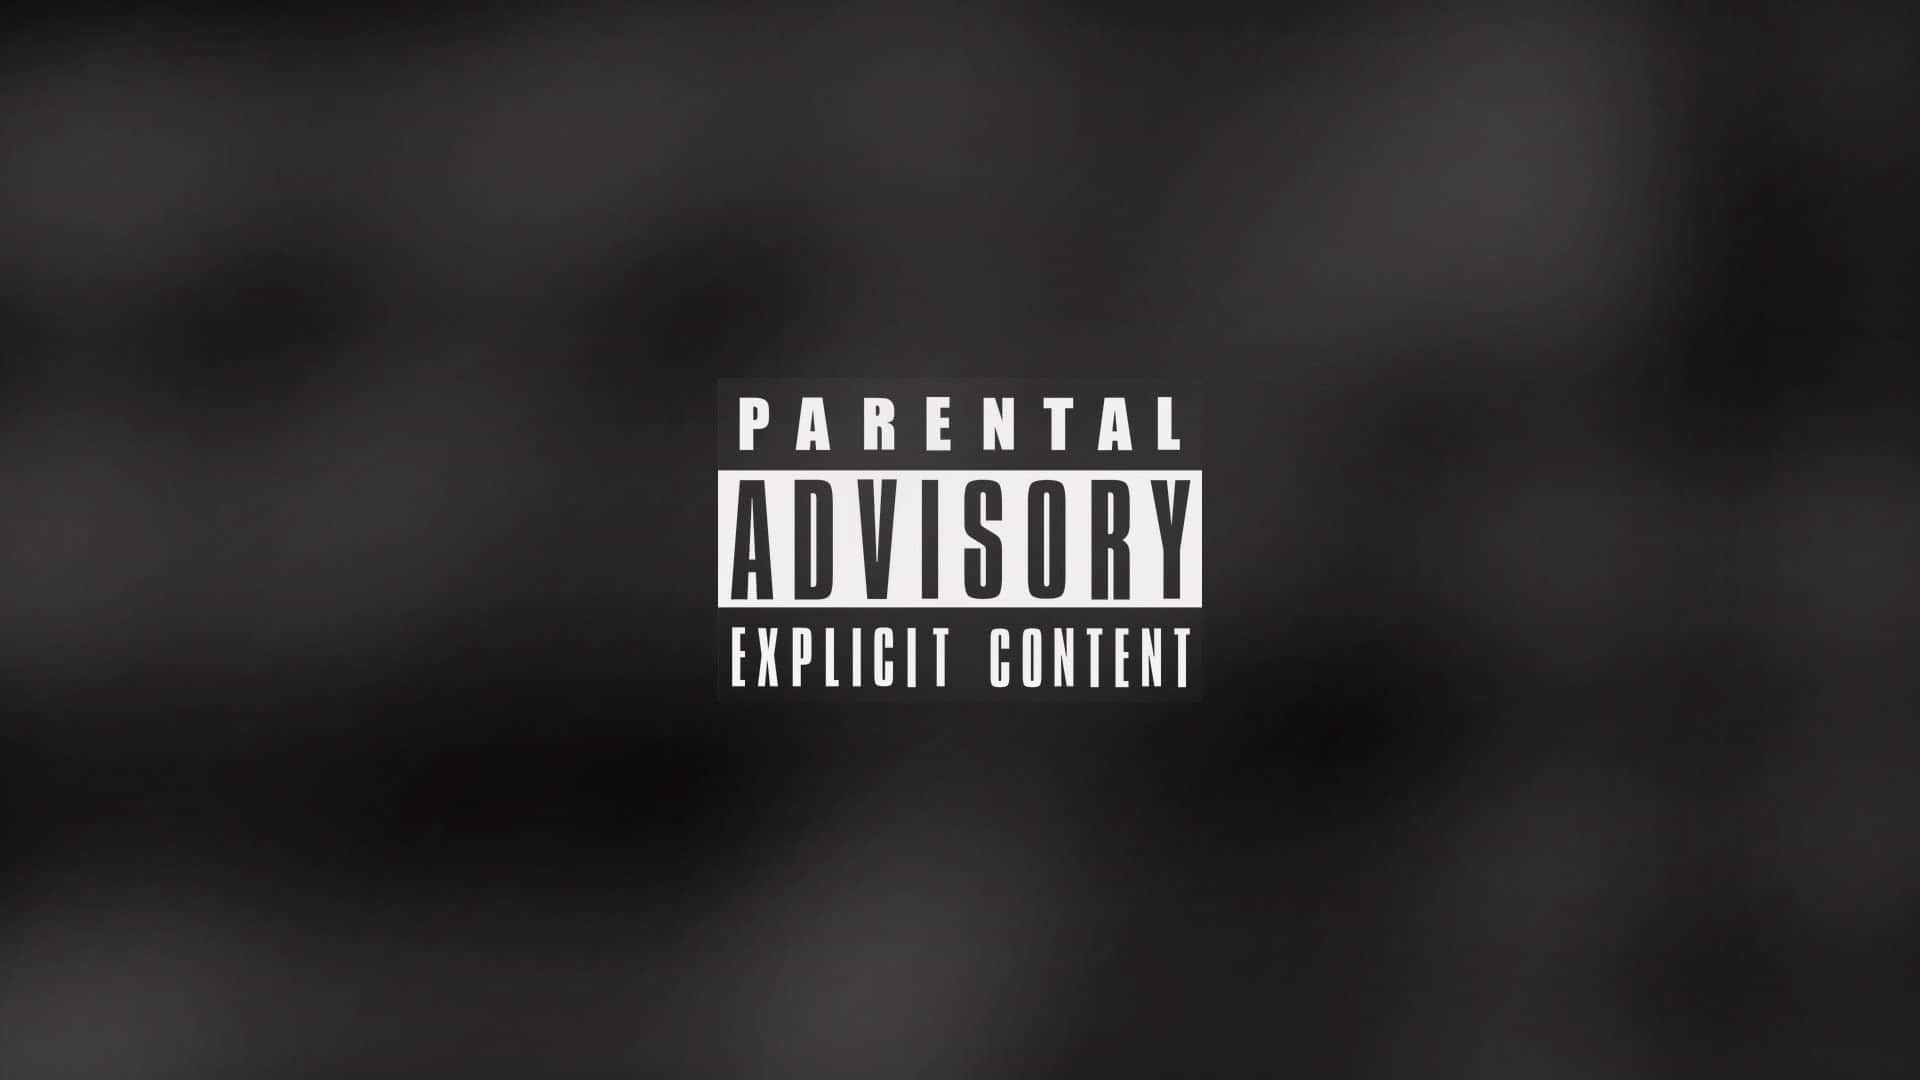 Parental Advisory Explicit Content Desktop Theme Wallpaper